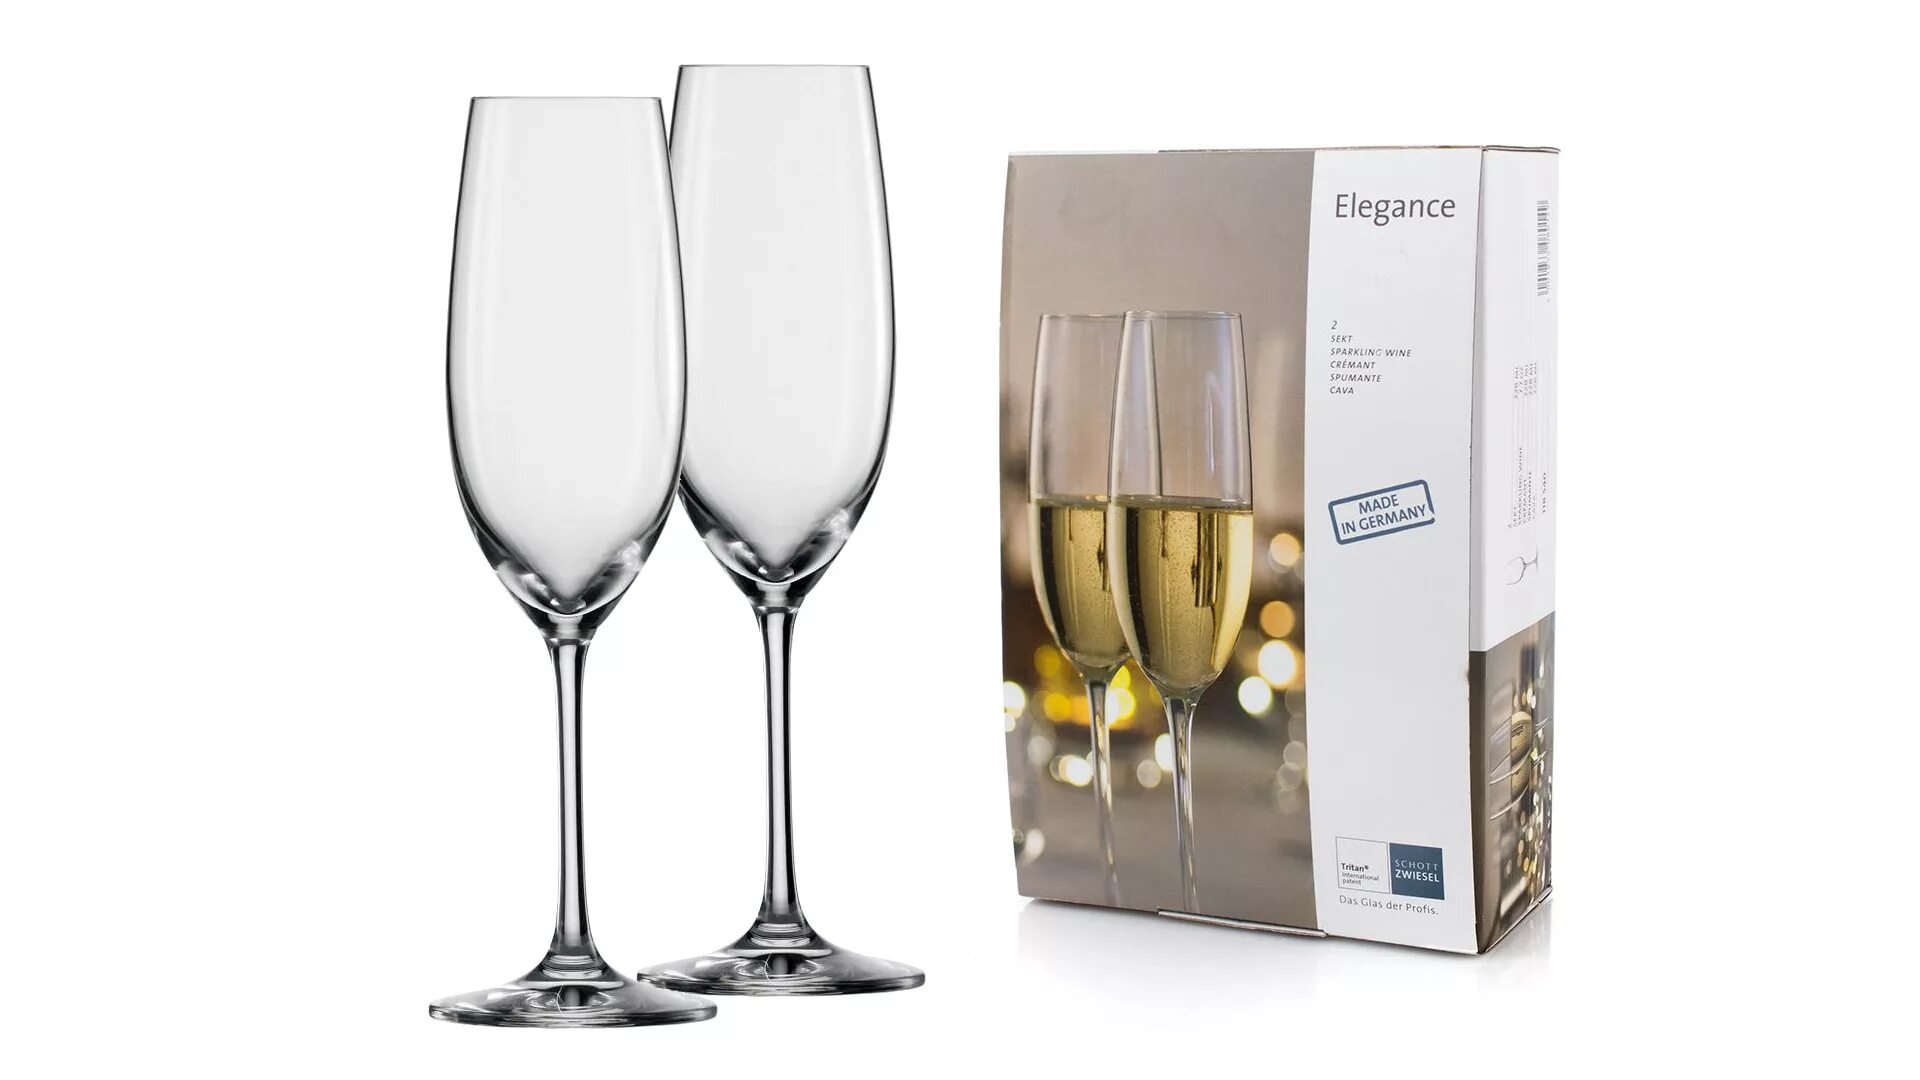 Набор бокалов для вина Элеганс 2шт 245мл. Zwiesel Glas бокалы. Набор бокалов Schott Zwiesel. Набор фужеров для шампанского Элеганс  2шт 170мл q9530. Бокалы для шампанского 2 шт